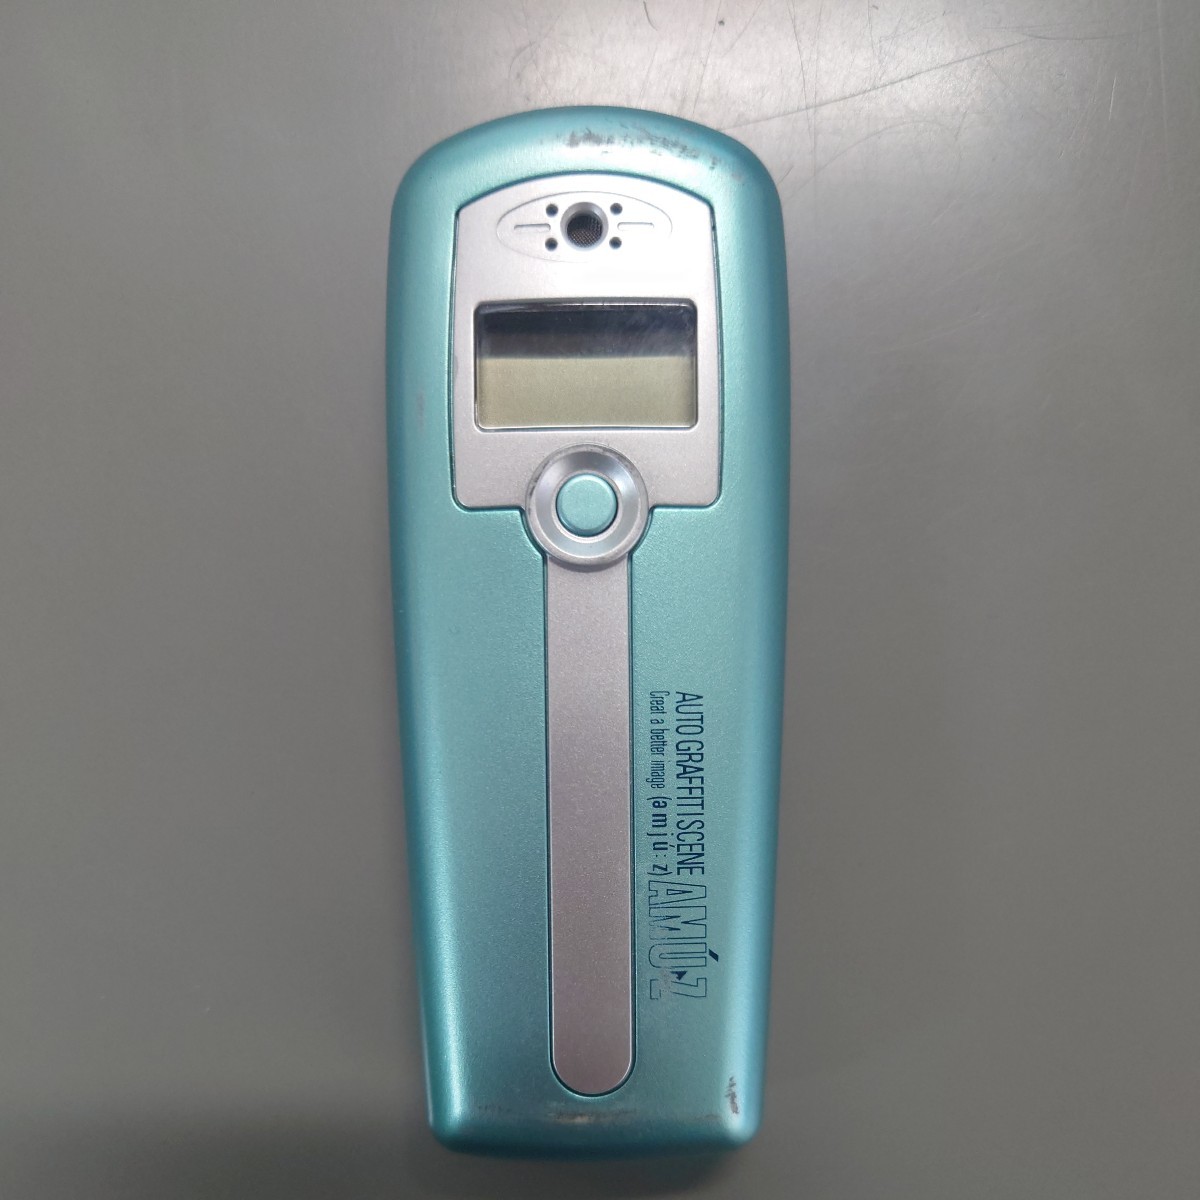 [ б/у ] алкоголь контрольно-измерительный прибор Mini алкоголь детектор маленький корпус .. измерение отображать ②